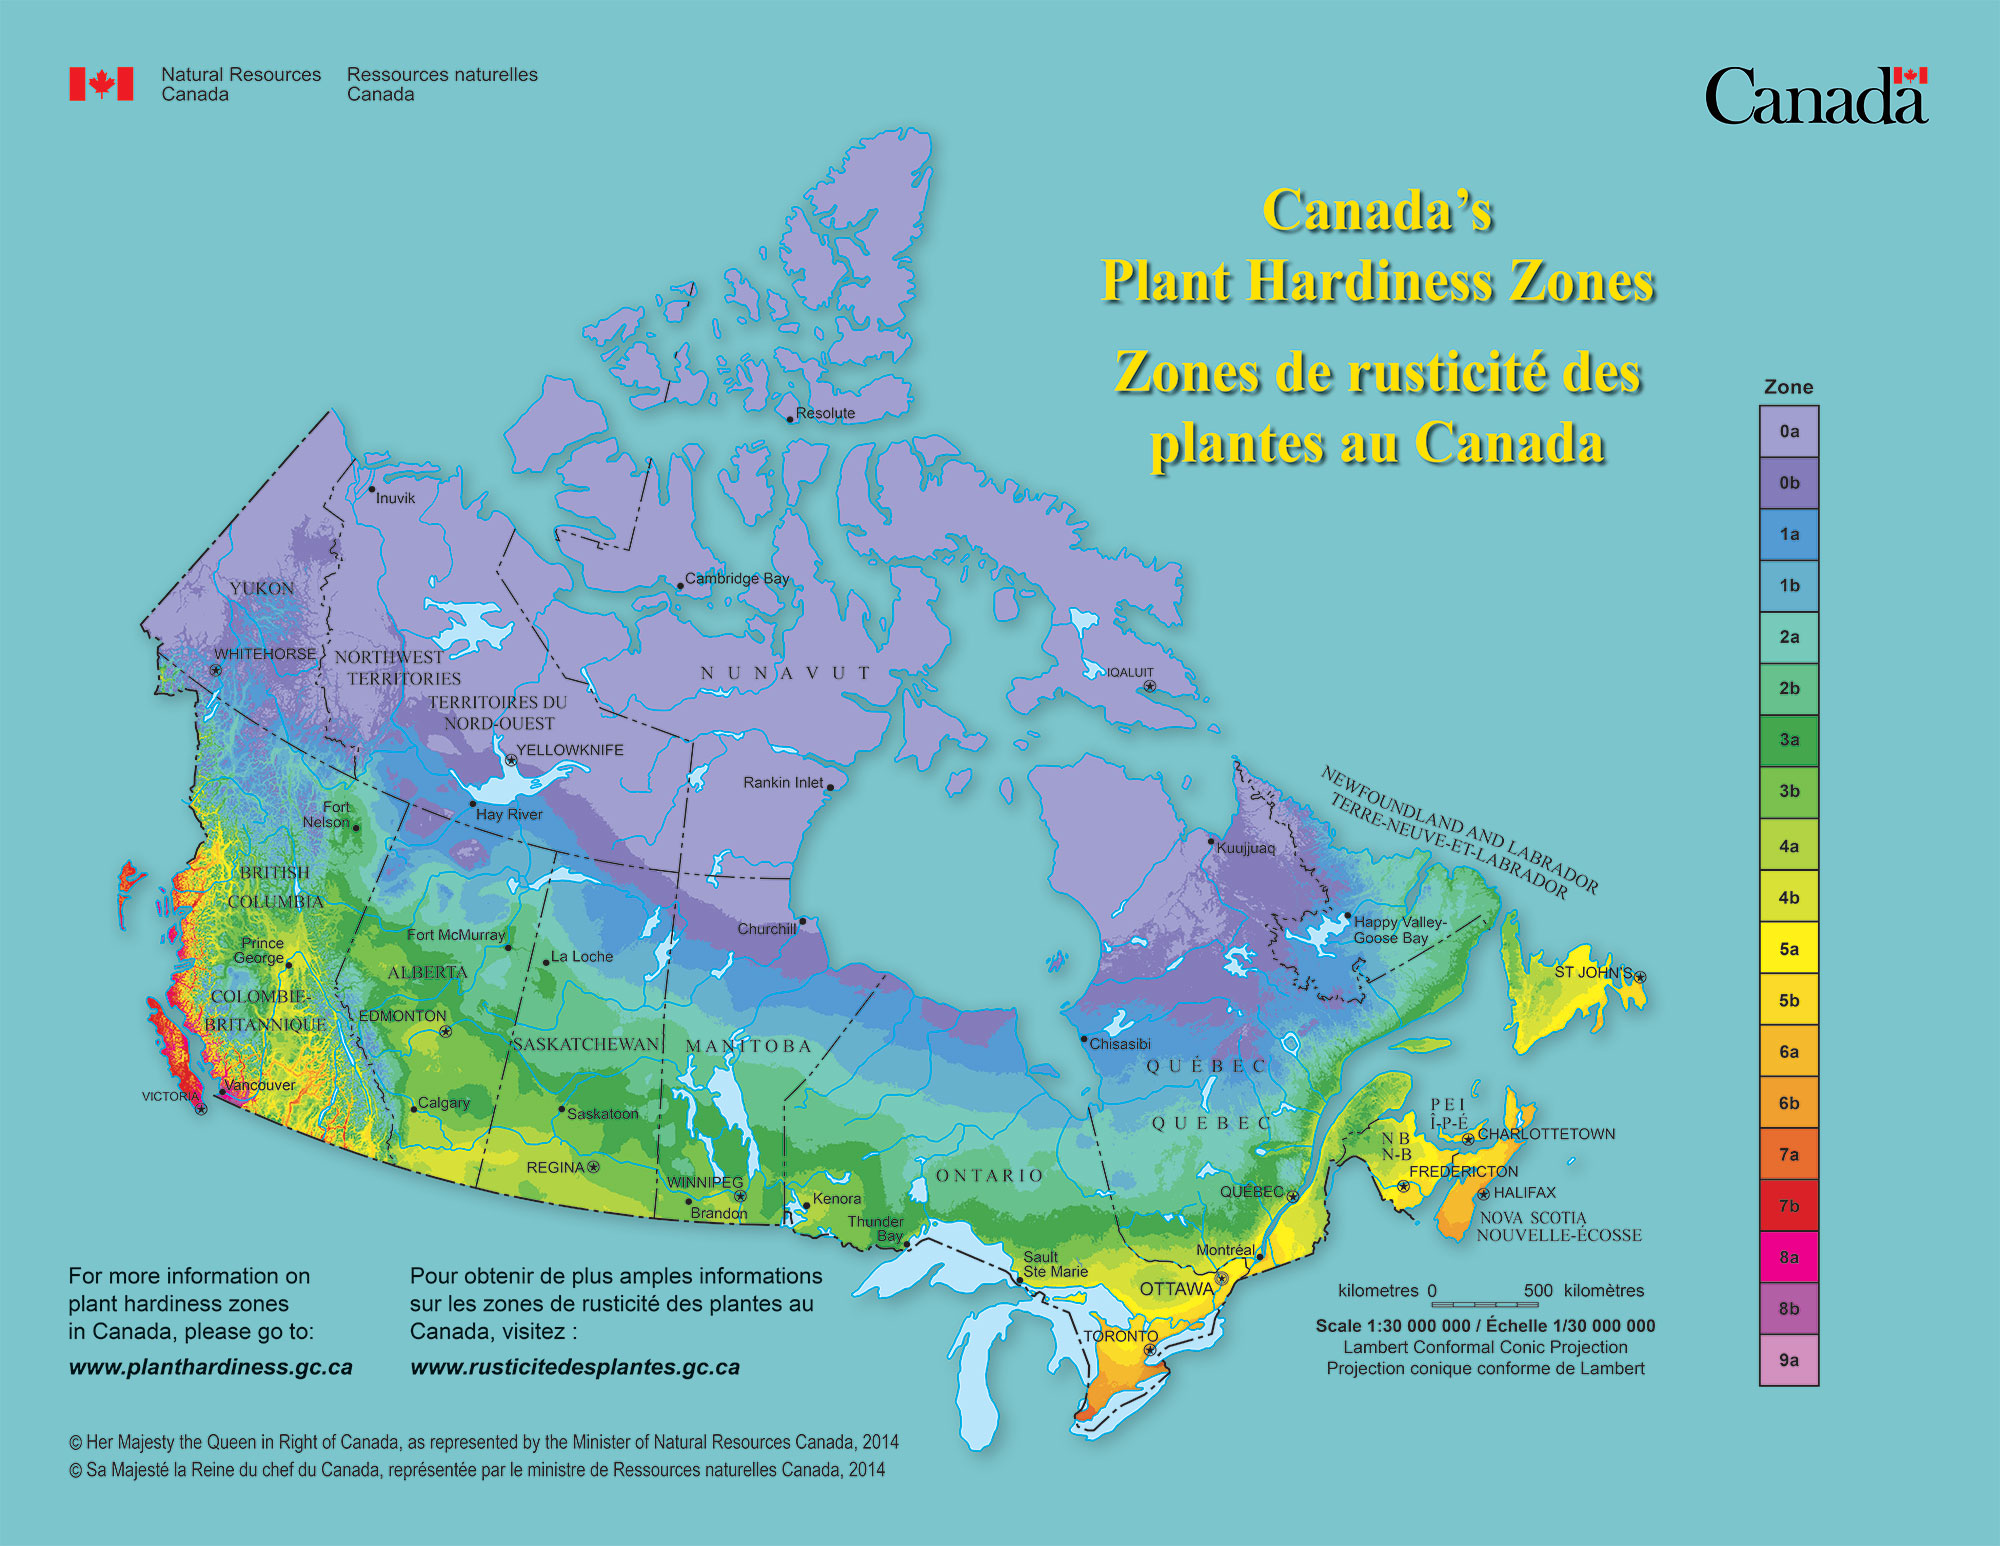 Canada’s Plant Hardiness Zones